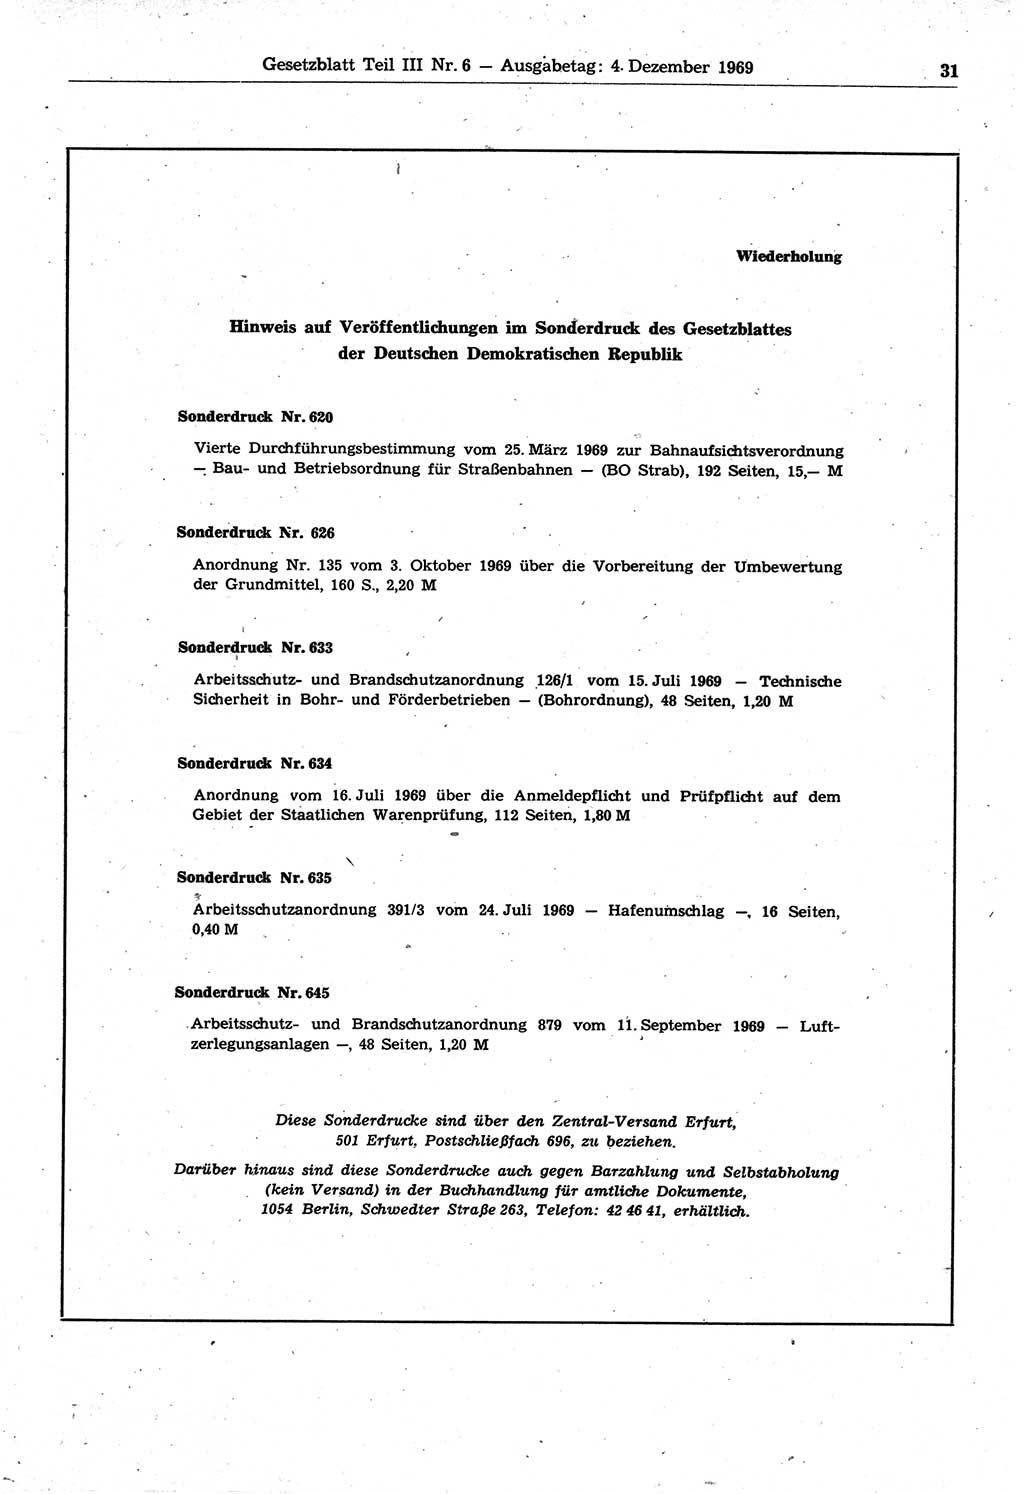 Gesetzblatt (GBl.) der Deutschen Demokratischen Republik (DDR) Teil ⅠⅠⅠ 1969, Seite 31 (GBl. DDR ⅠⅠⅠ 1969, S. 31)